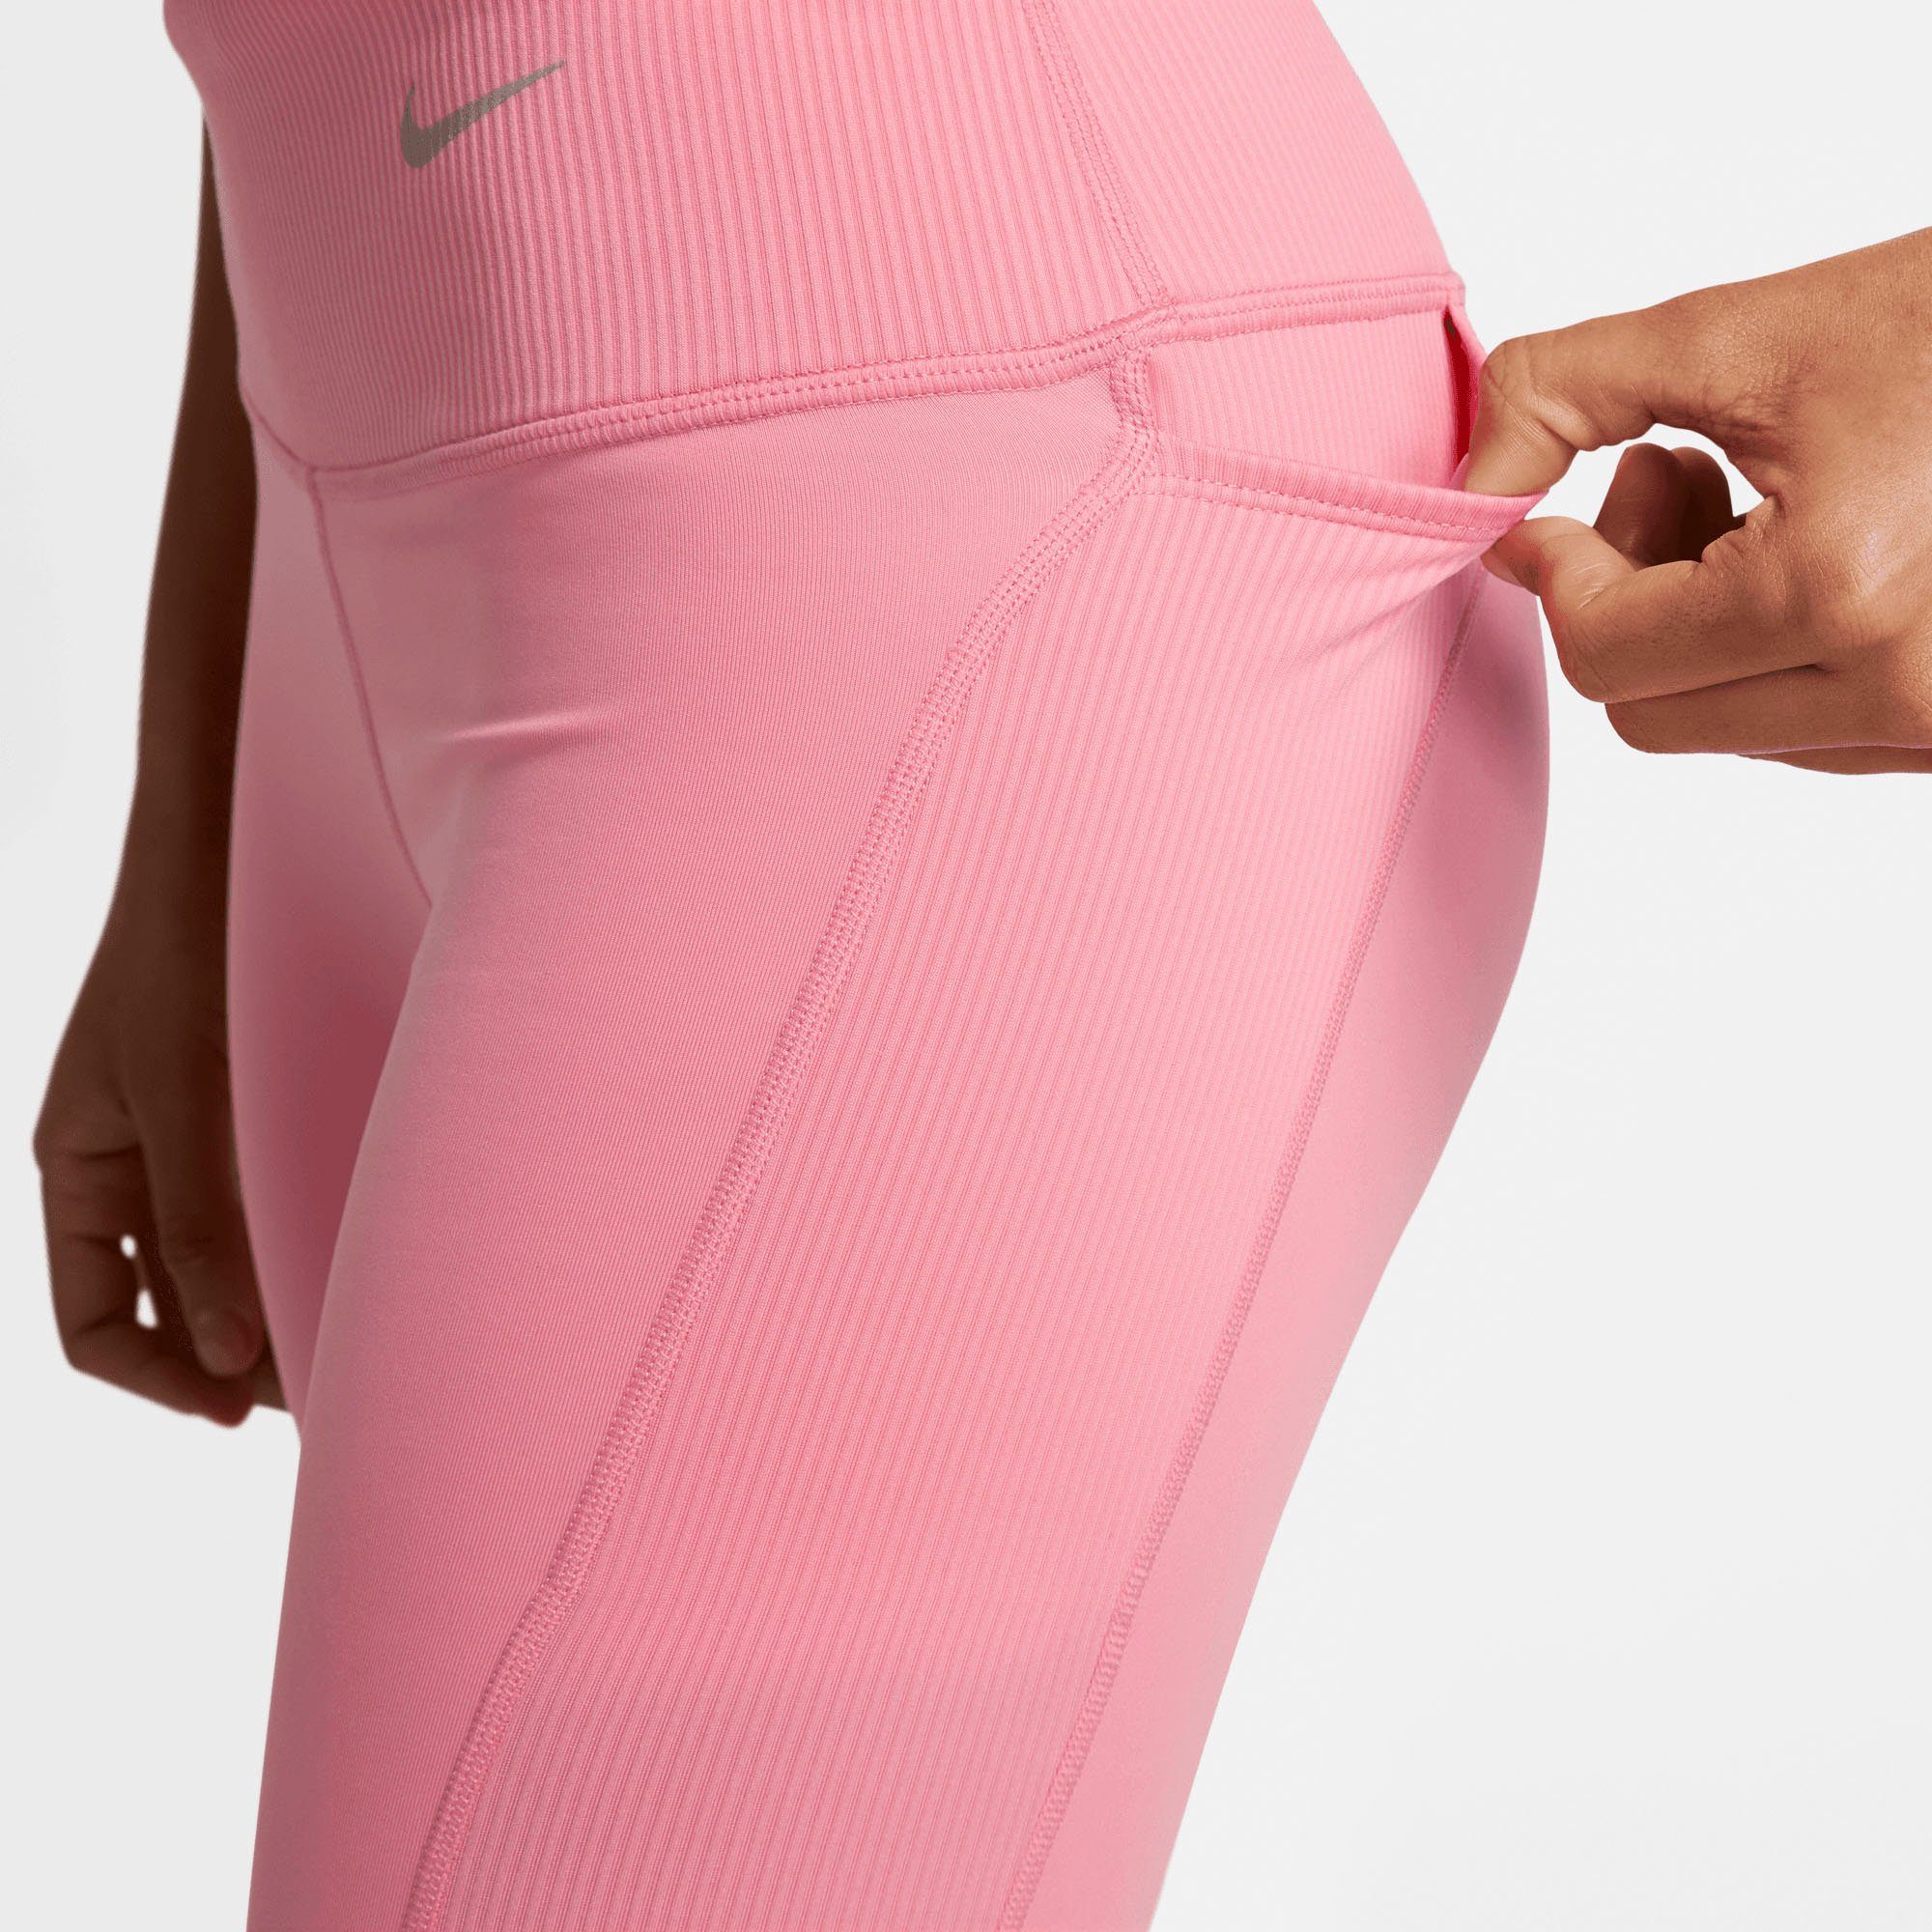 Dri-FIT Shorts Lauftights Women's Nike rot